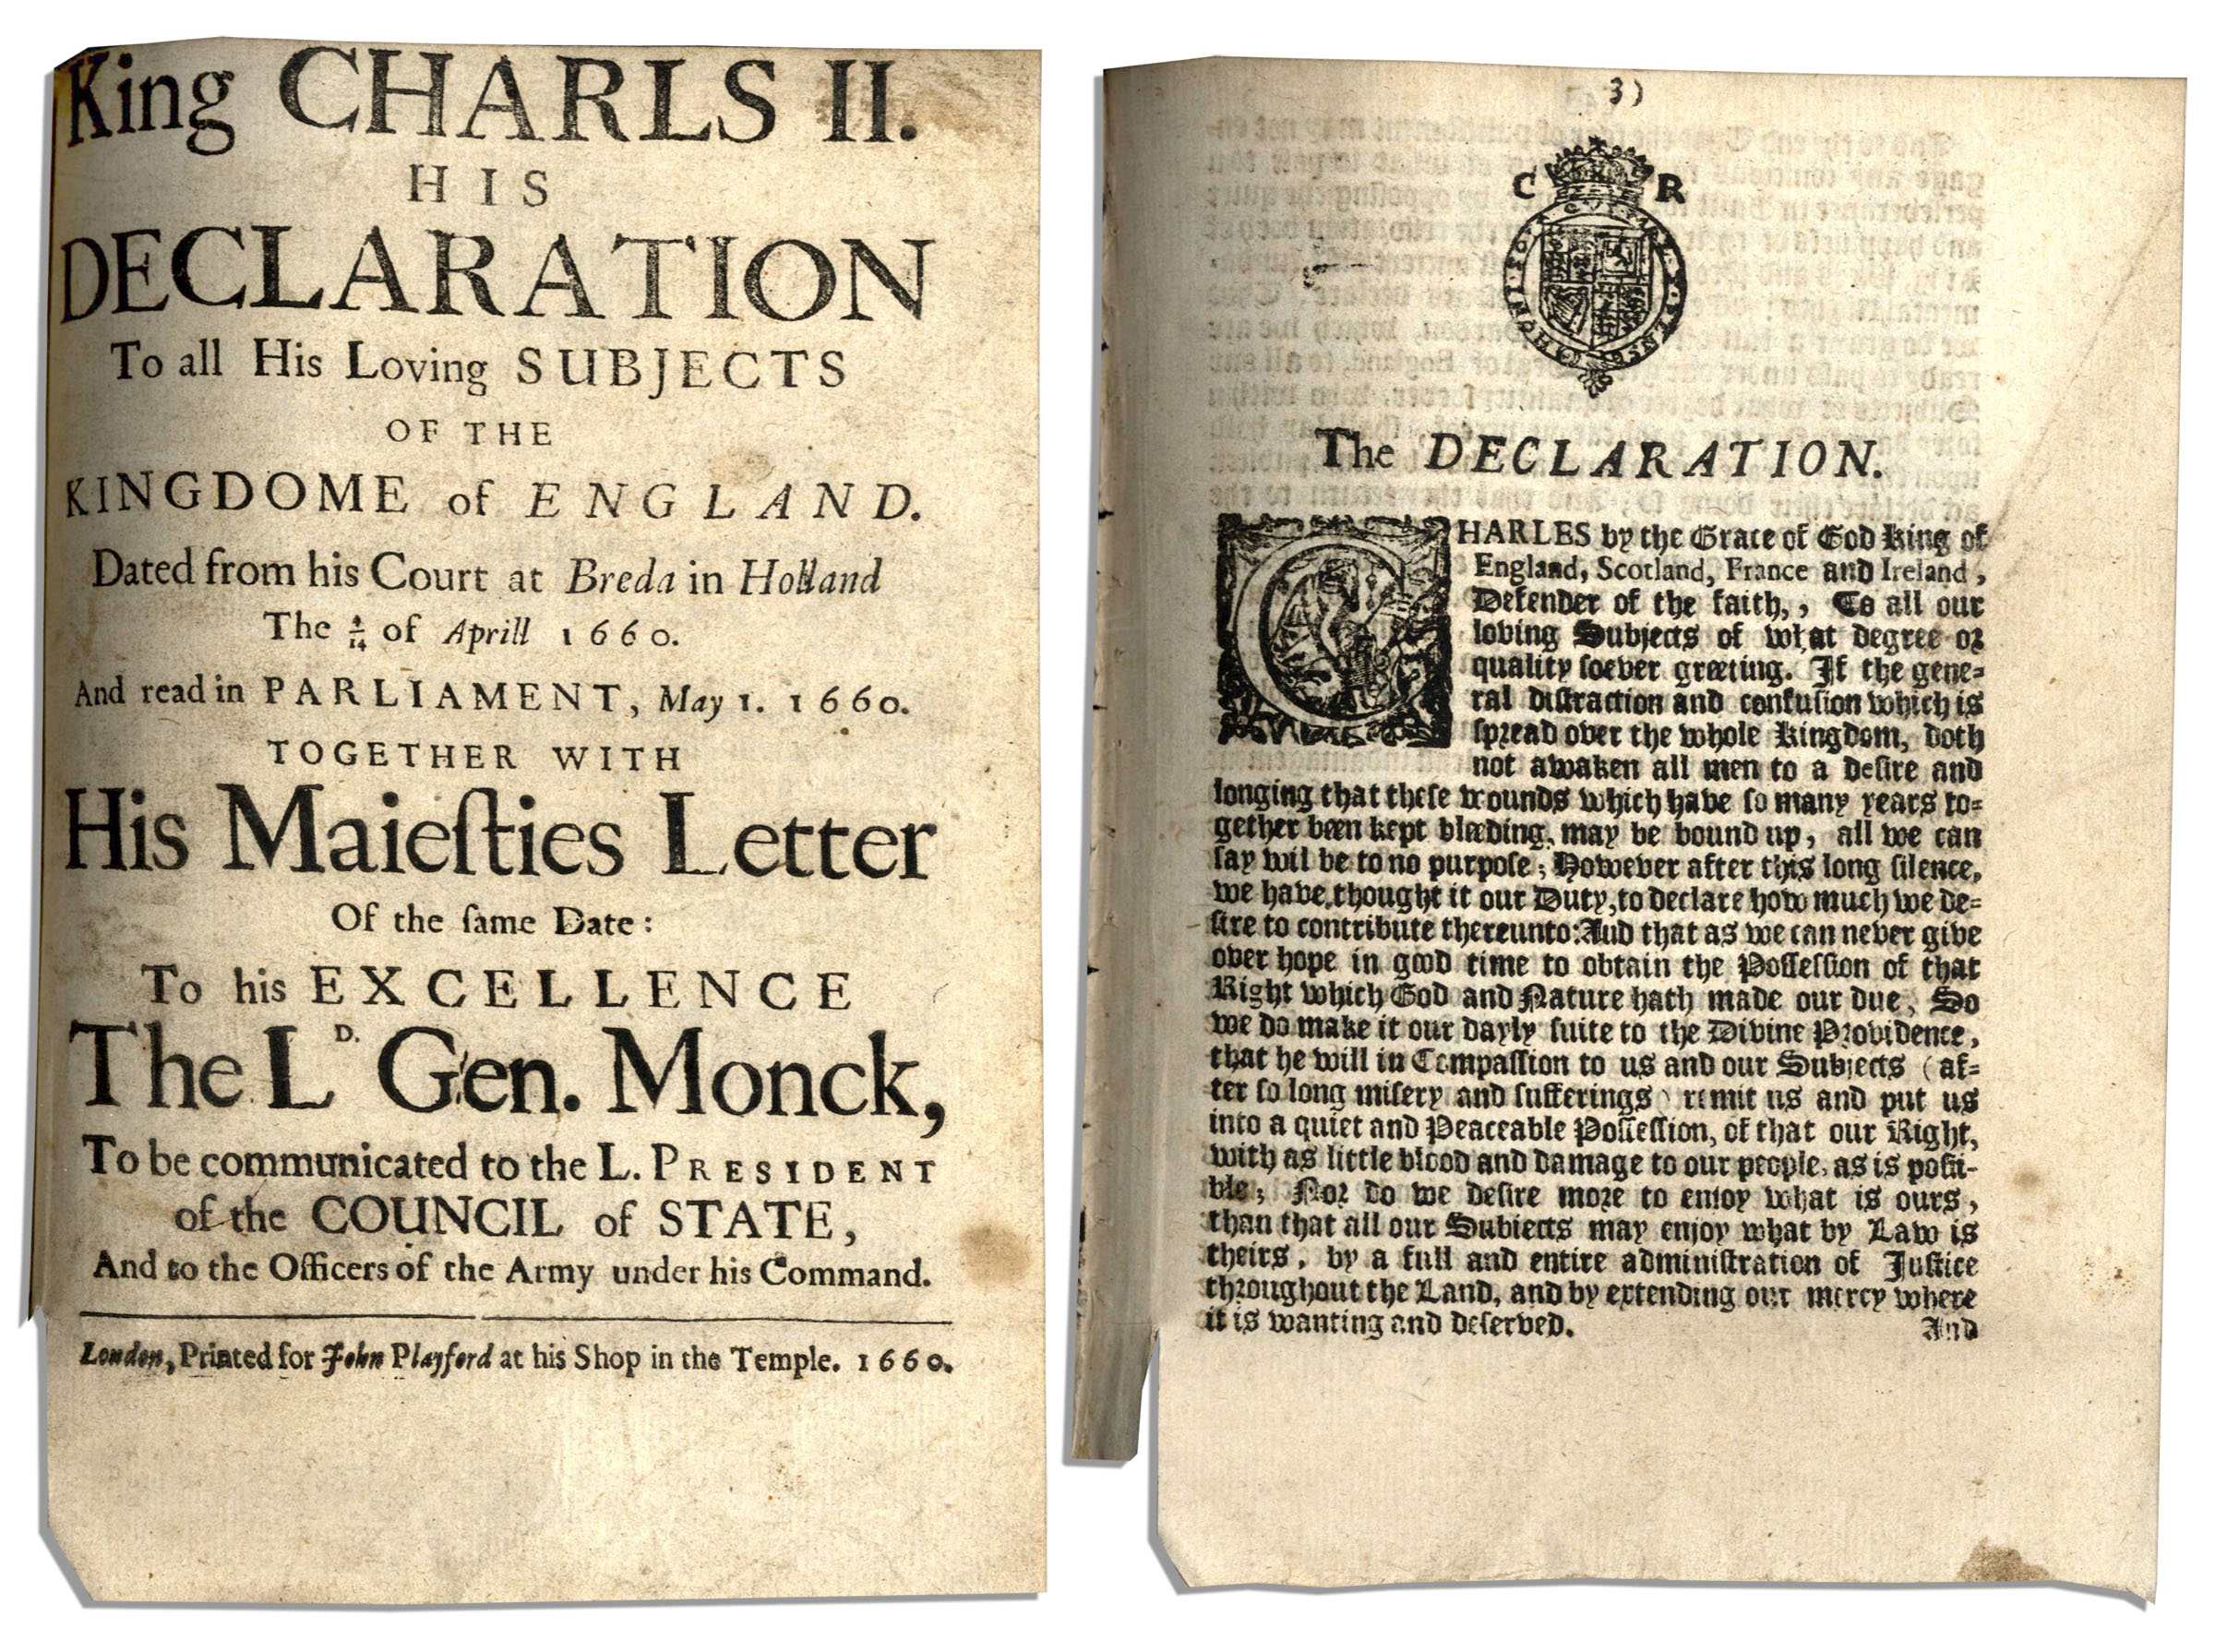 1 реставрация династии стюартов в англии. Бредская декларация. Бредская декларация 1660 г. Декларация веротерпимости.